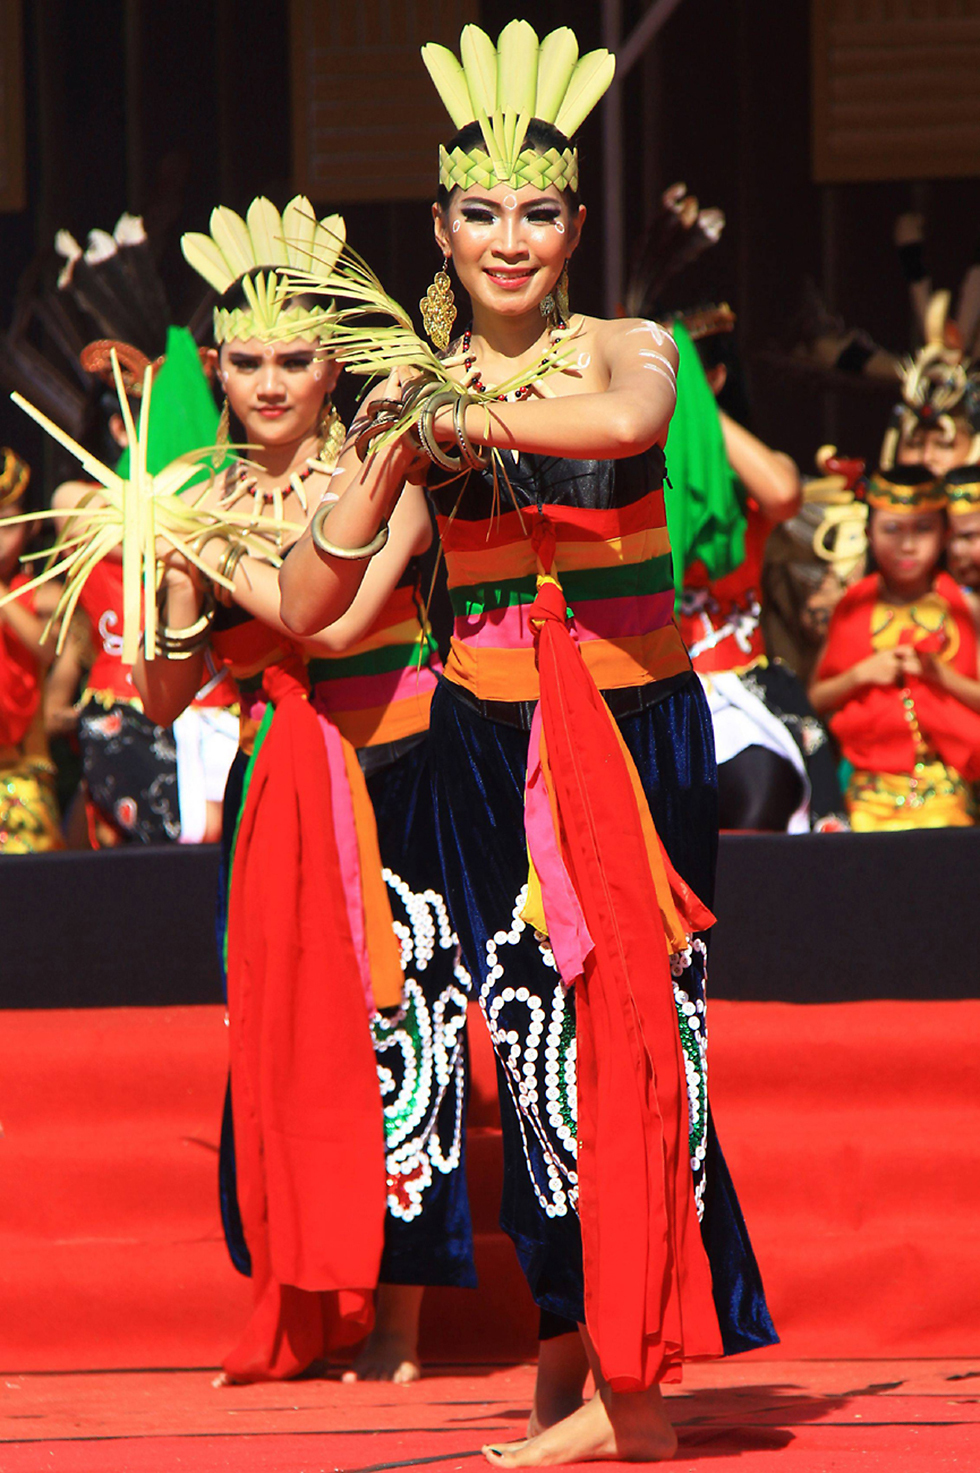 בפלנגקראייה שבאינדונזיה קיבלו את פני ליקוי החמה במחול ובריקודים (צילום: AFP) (צילום: AFP)